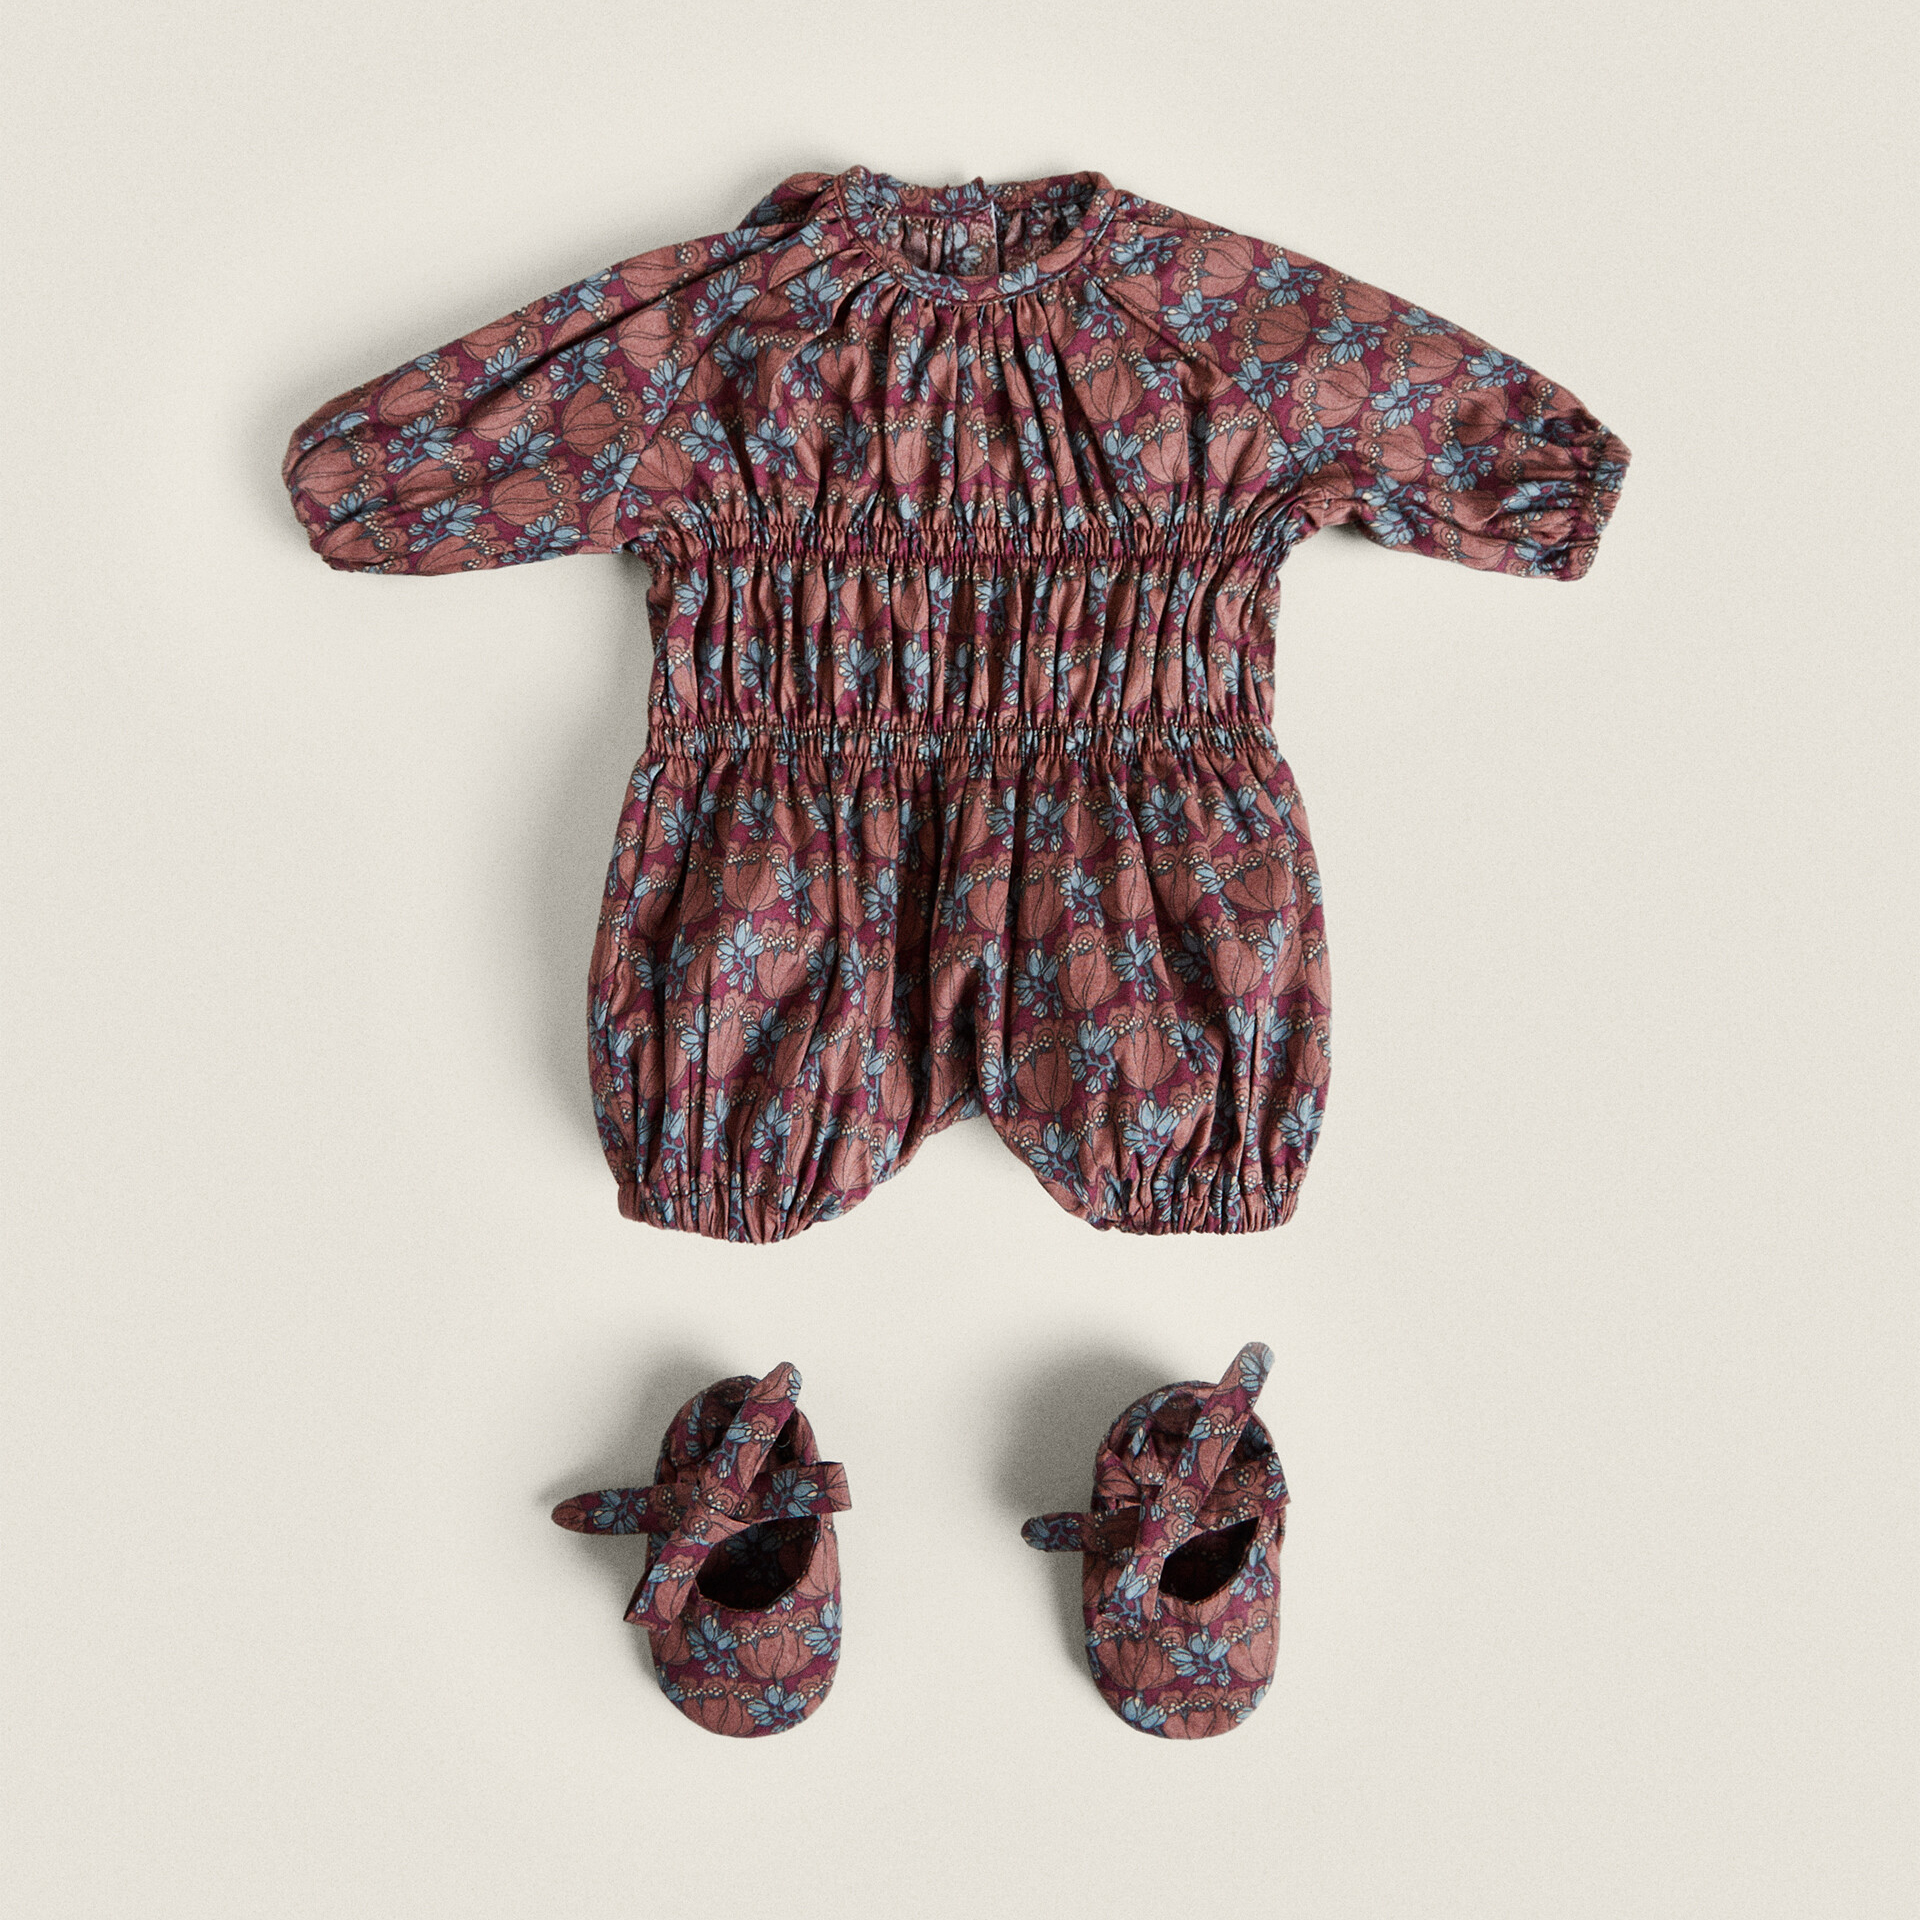 Комплект одежды для куклы Zara Home Children’s Made With Liberty Fabric, мультколор